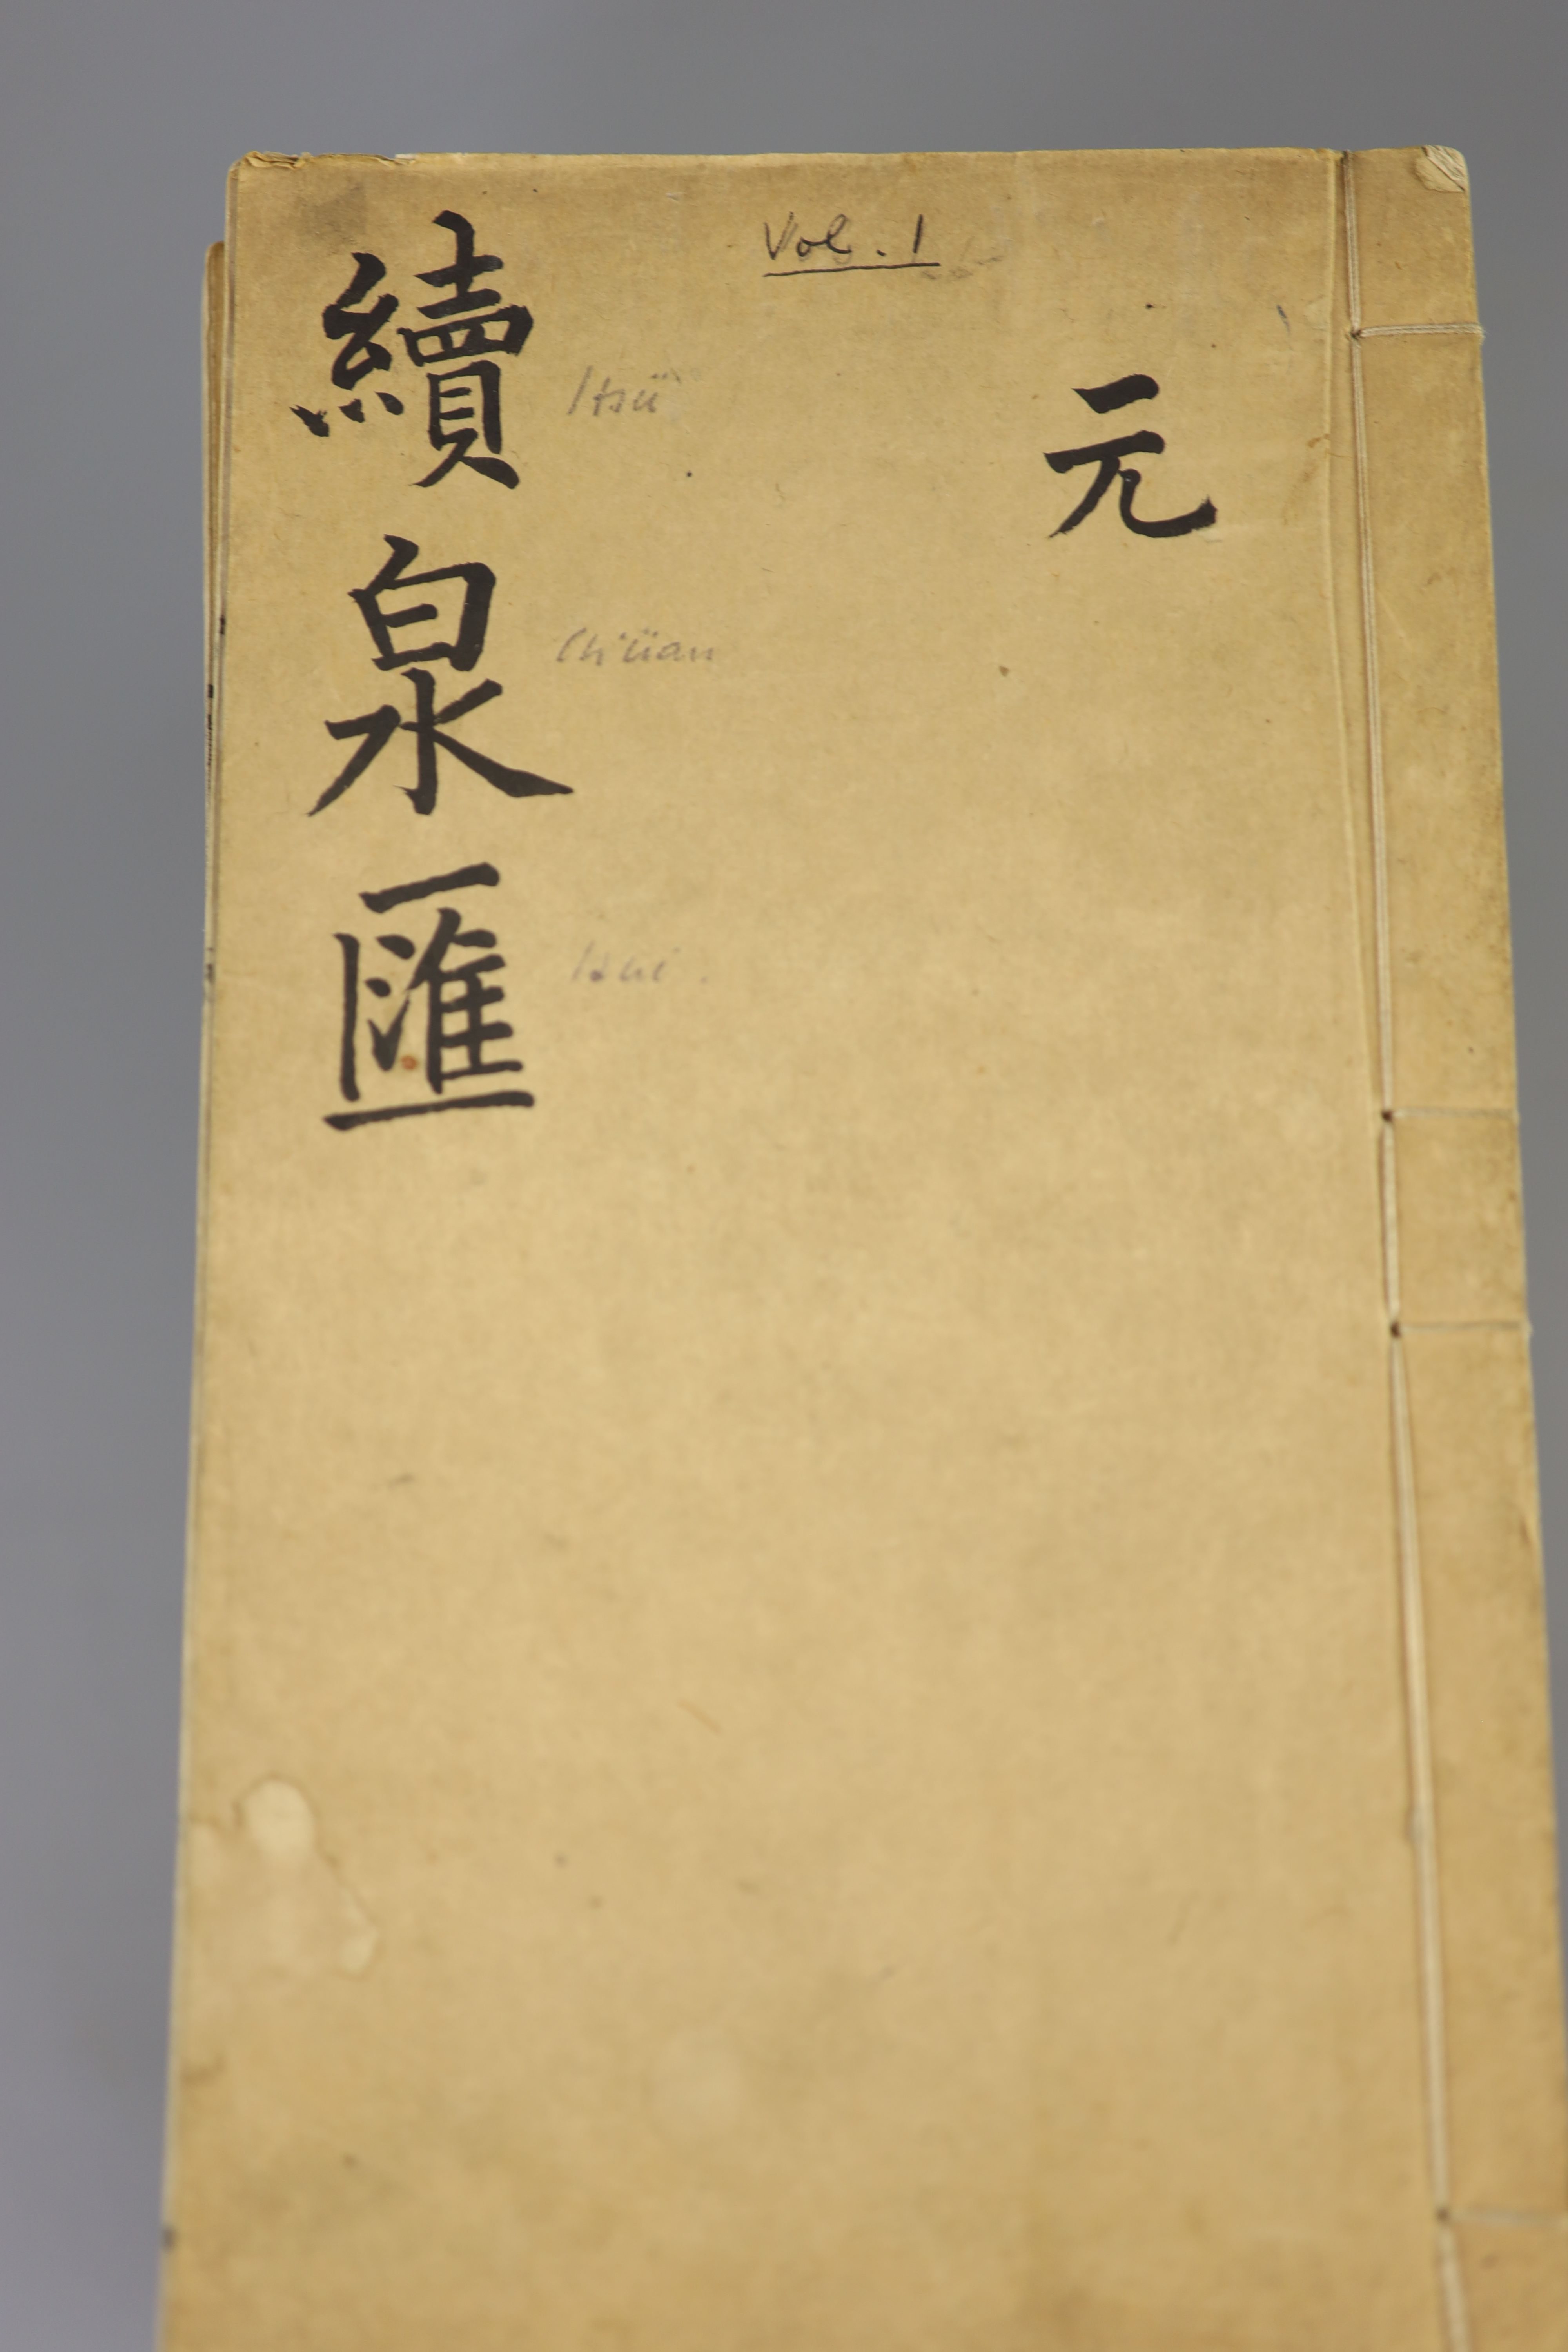 Li Zhuoxian, 'Gu quan hui' (Collecting old coins), published in Beijing, Tongzhi jia zi, 1864, 16 volumes and Li Zhuoxian, 'Xua quan hui' (Collecting coins continued) published in Beijing, Guangxu ji yuan yi hai, 1875, f